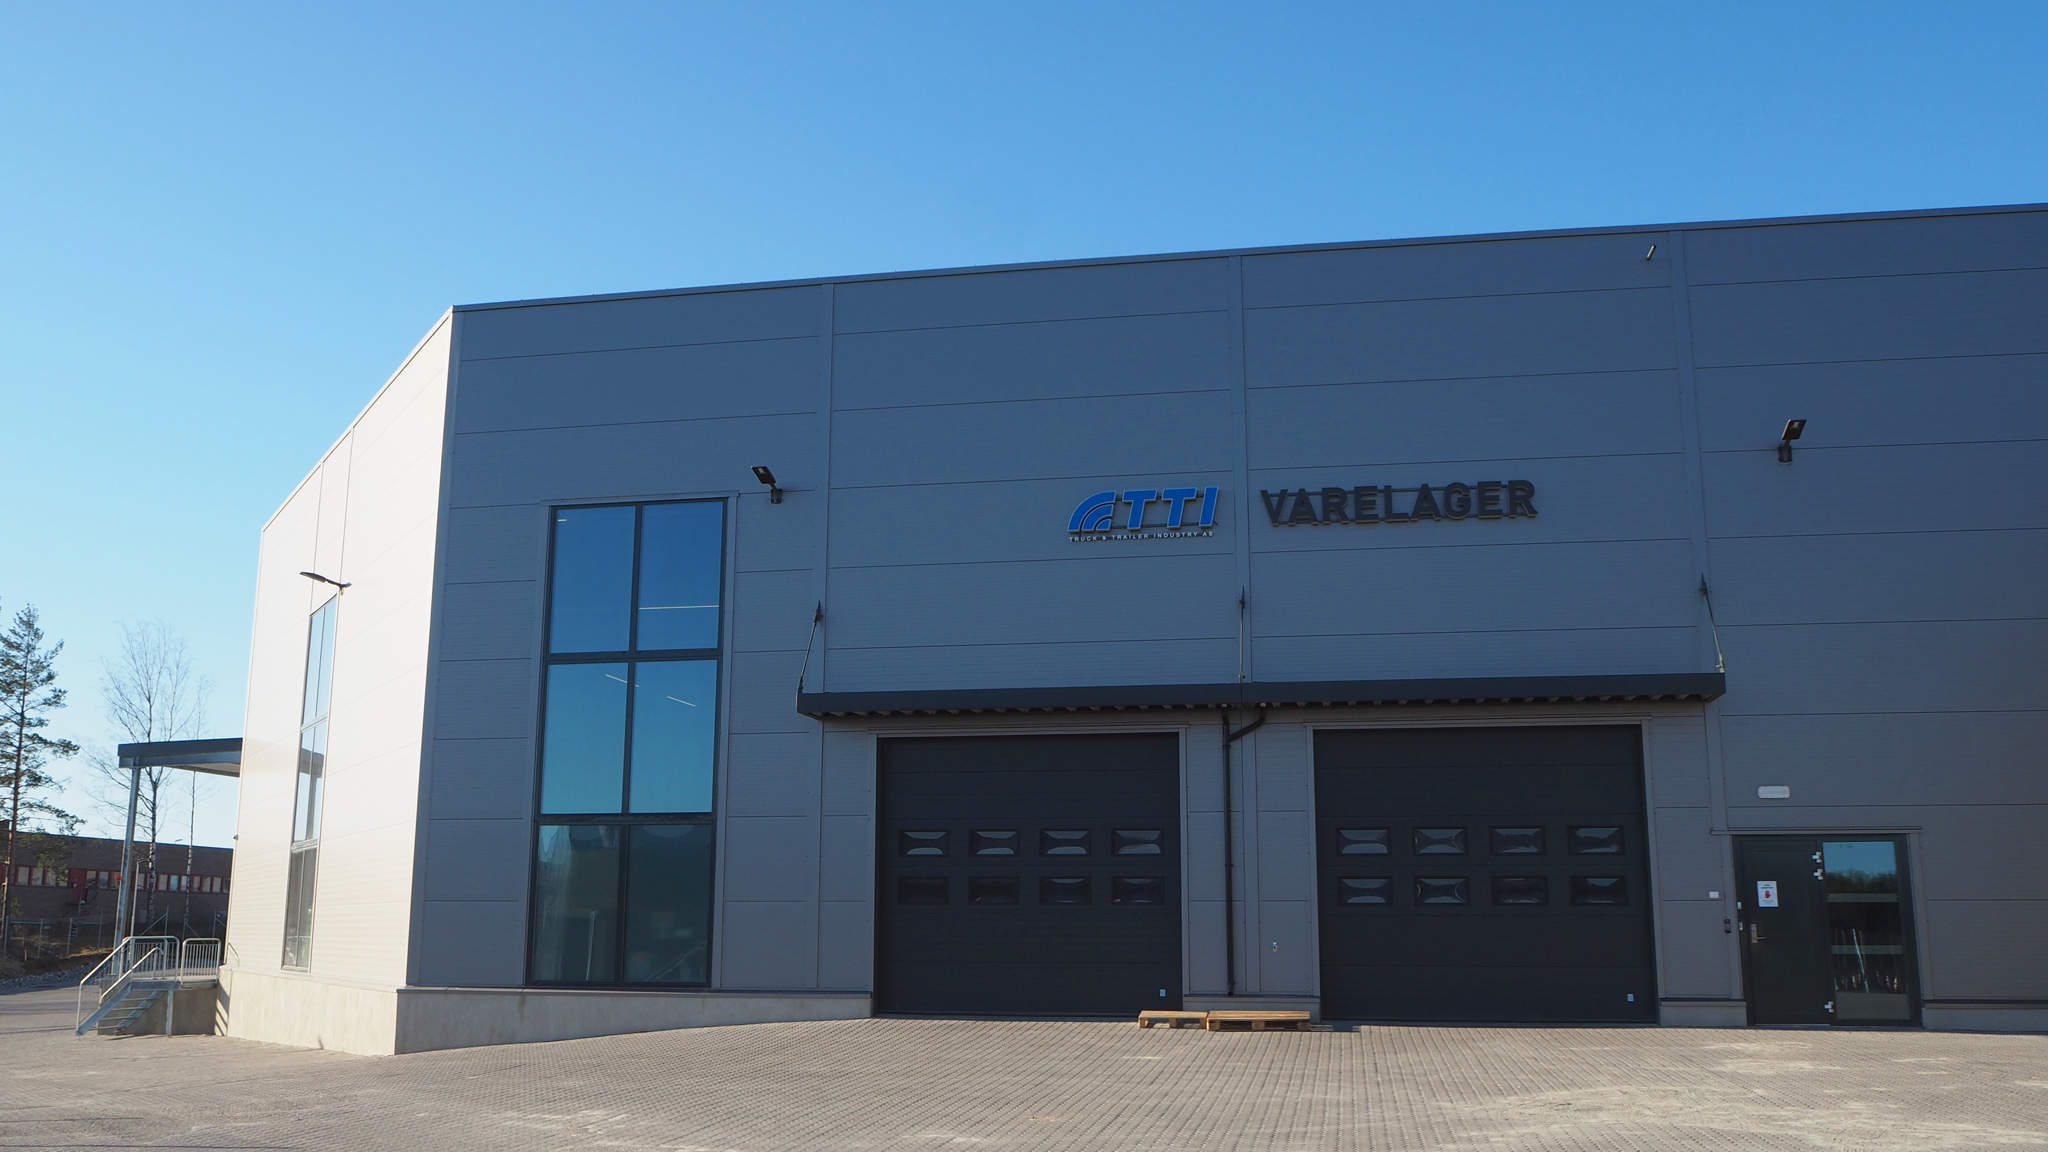 Noorse bedrijf TTI vertrouwt op de logistieke dienstverlening van DACHSER betreft de levering van onderdelen voor zware bedrijfsvoertuigen en aanhangwagens aan Noorwegen vanuit heel Europa.